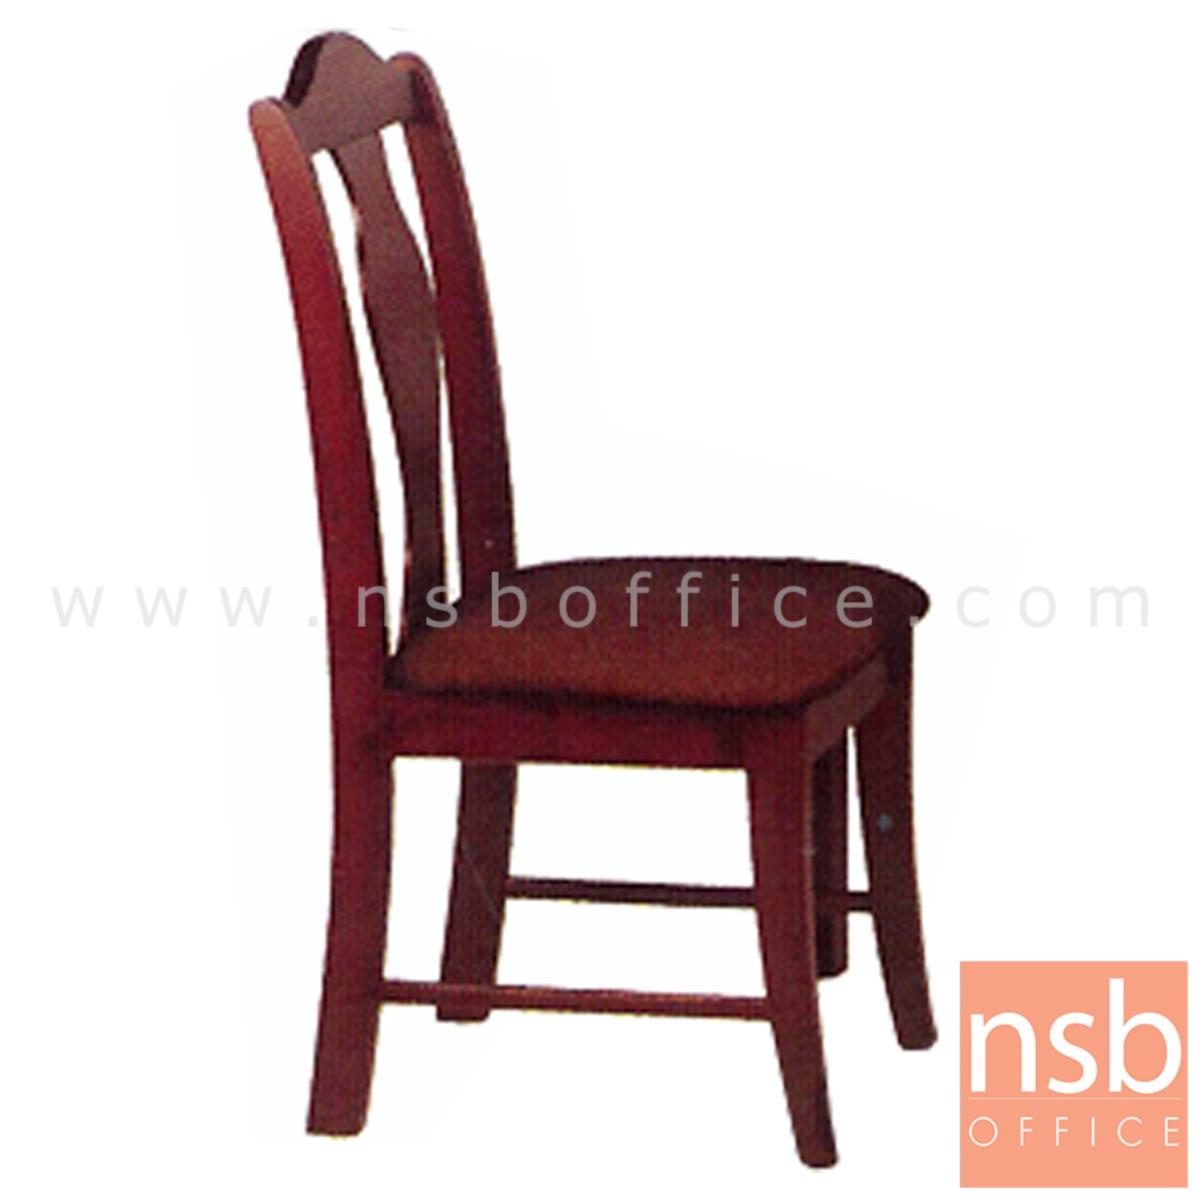 G14A043:เก้าอี้ไม้ยางพาราที่นั่งหุ้มหนังเทียม  รุ่น Webster (เว็บสเตอร์) ขาไม้ 